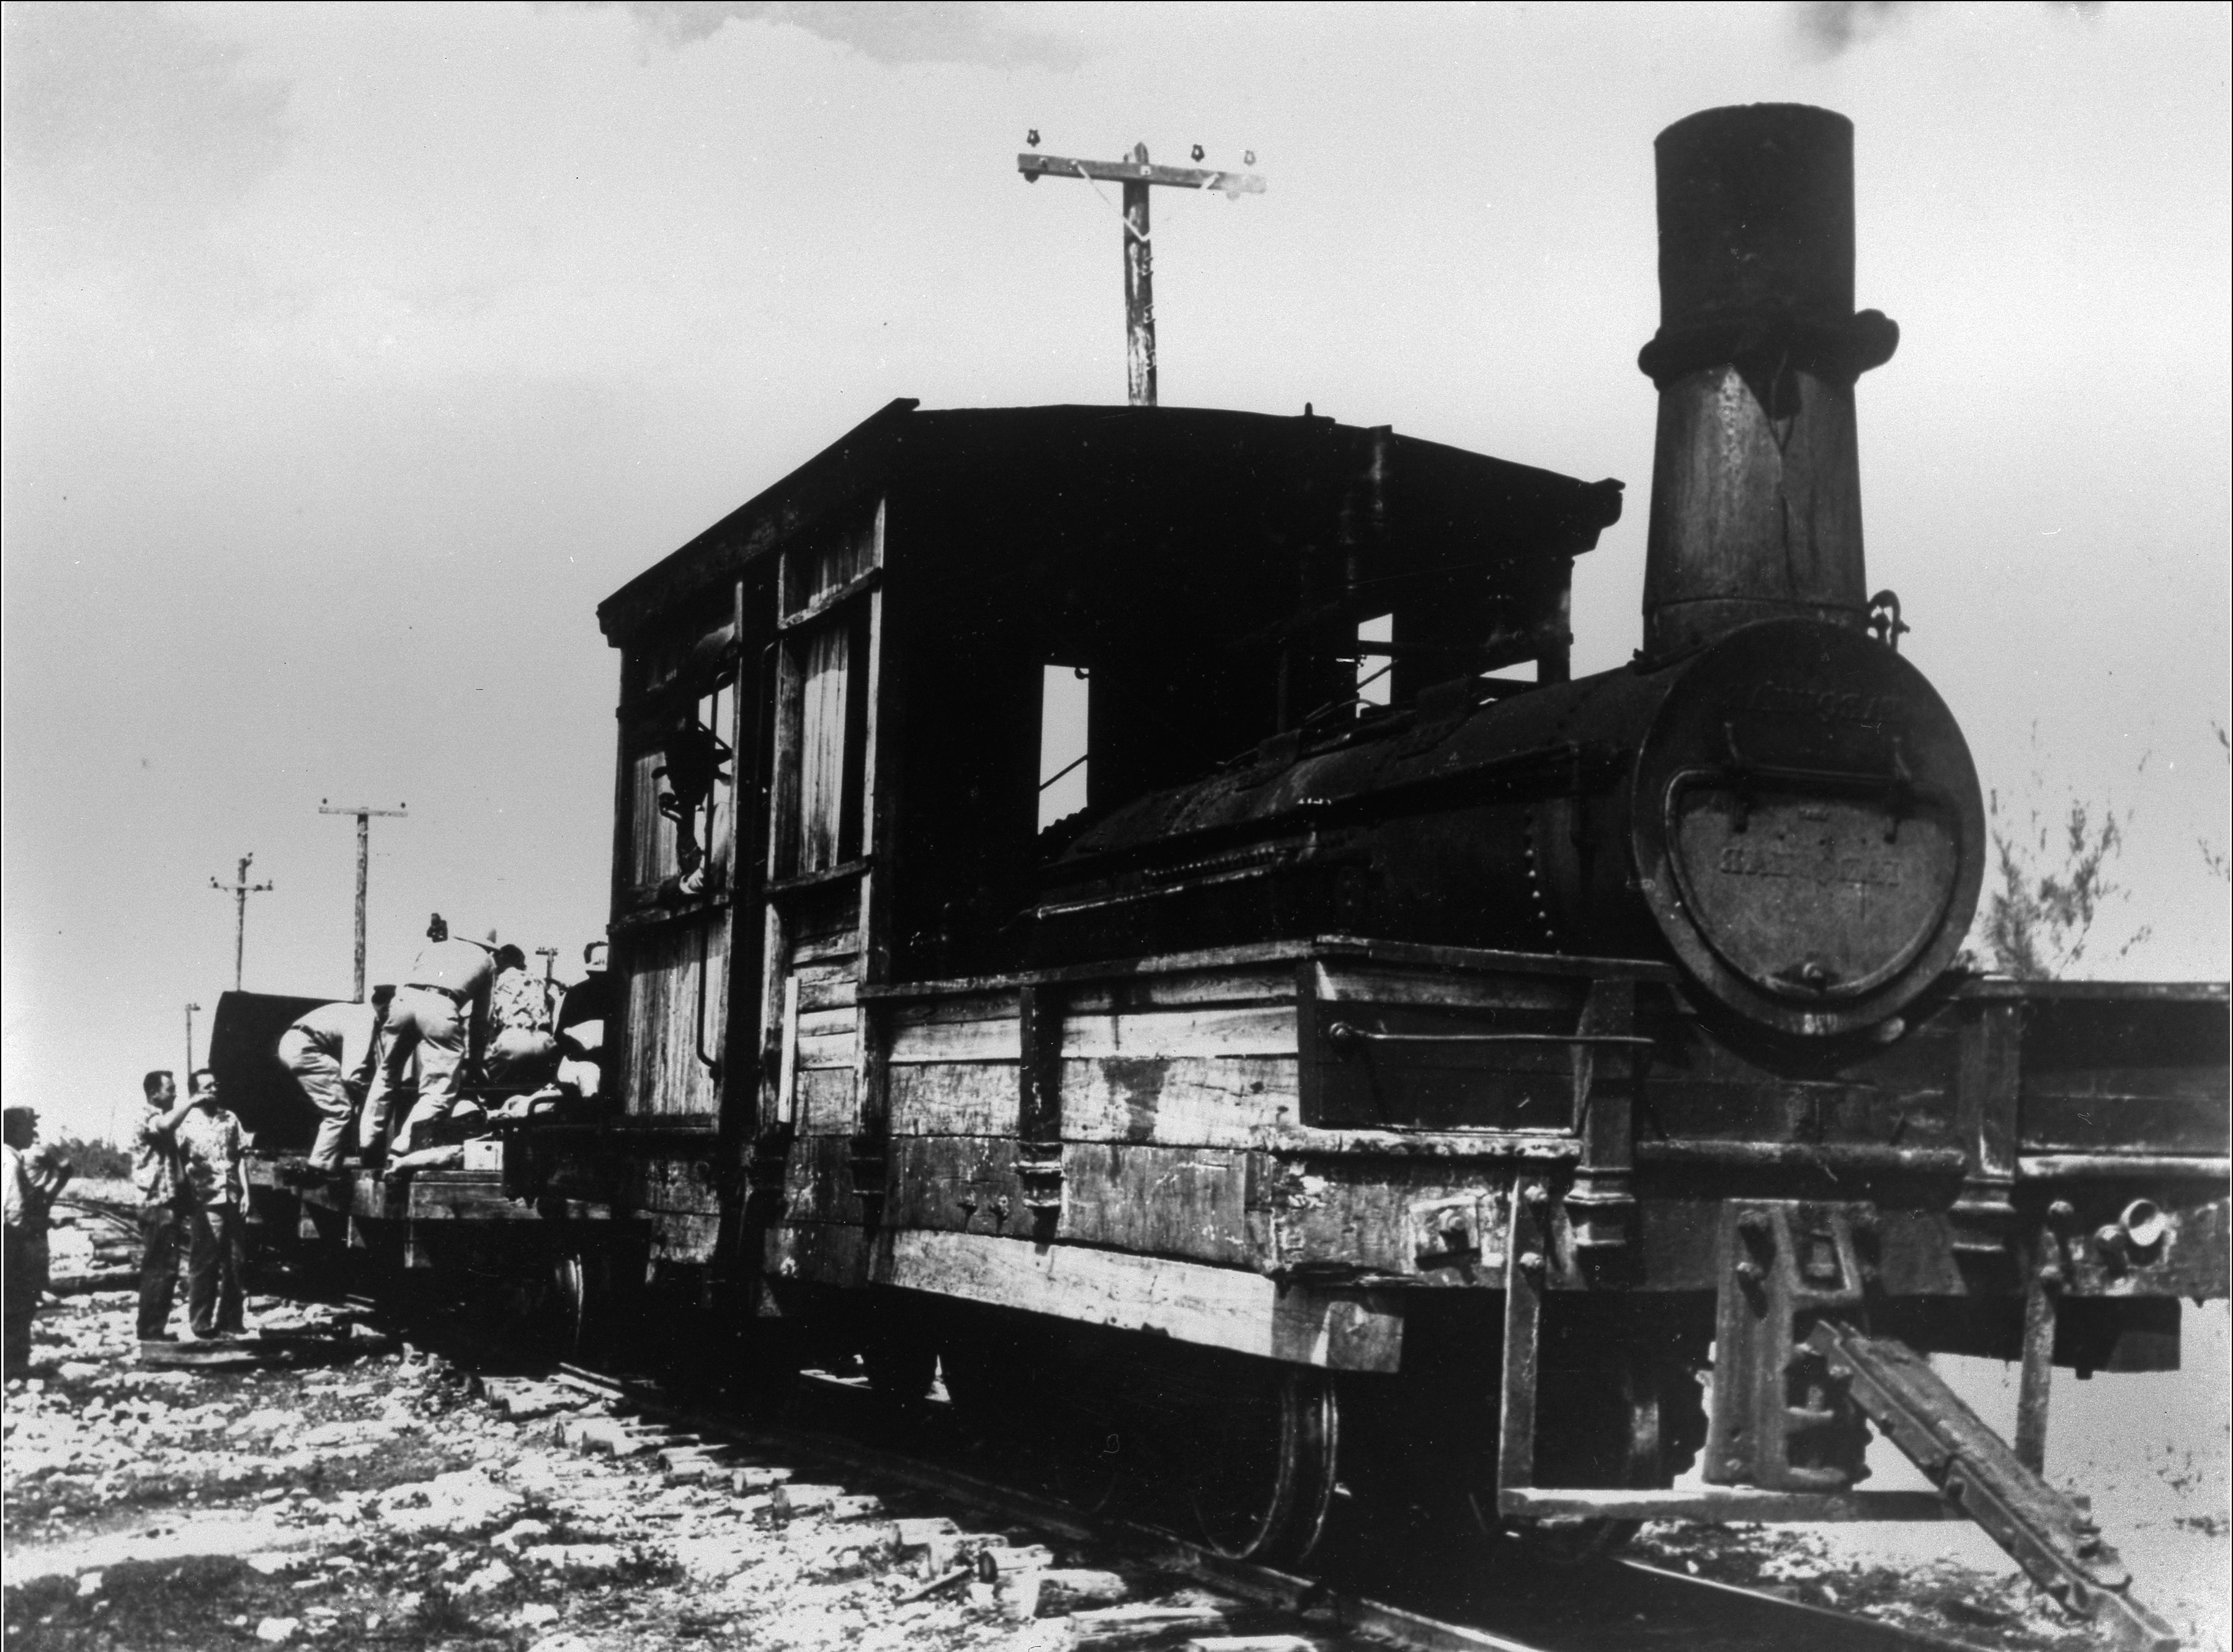 Locomotive at Pine Ridge Lumber Camp, 1952